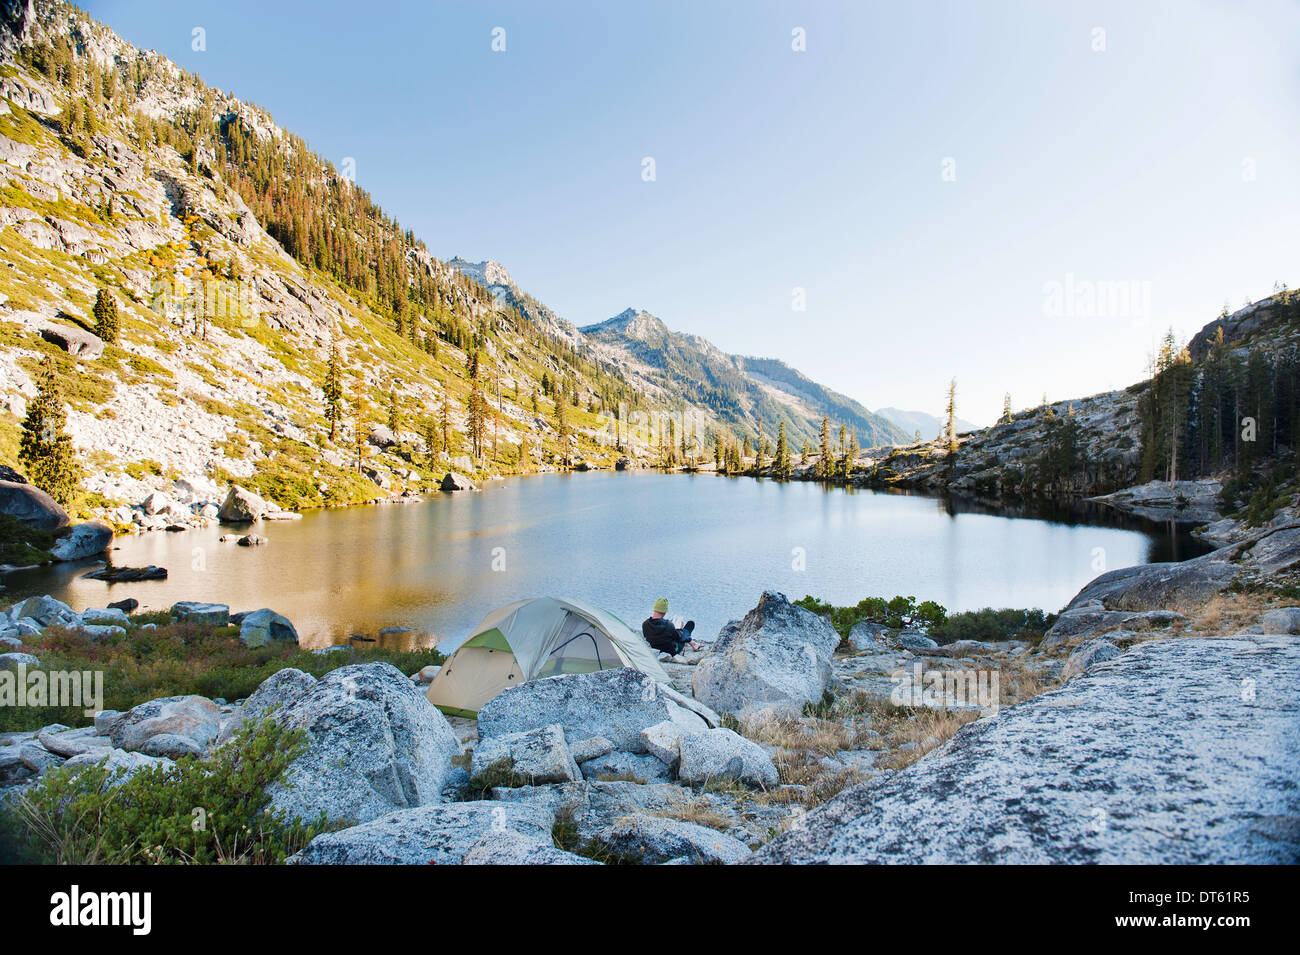 Joven acampar en remoto lago, Alpes Trinity, California, EE.UU. Foto de stock